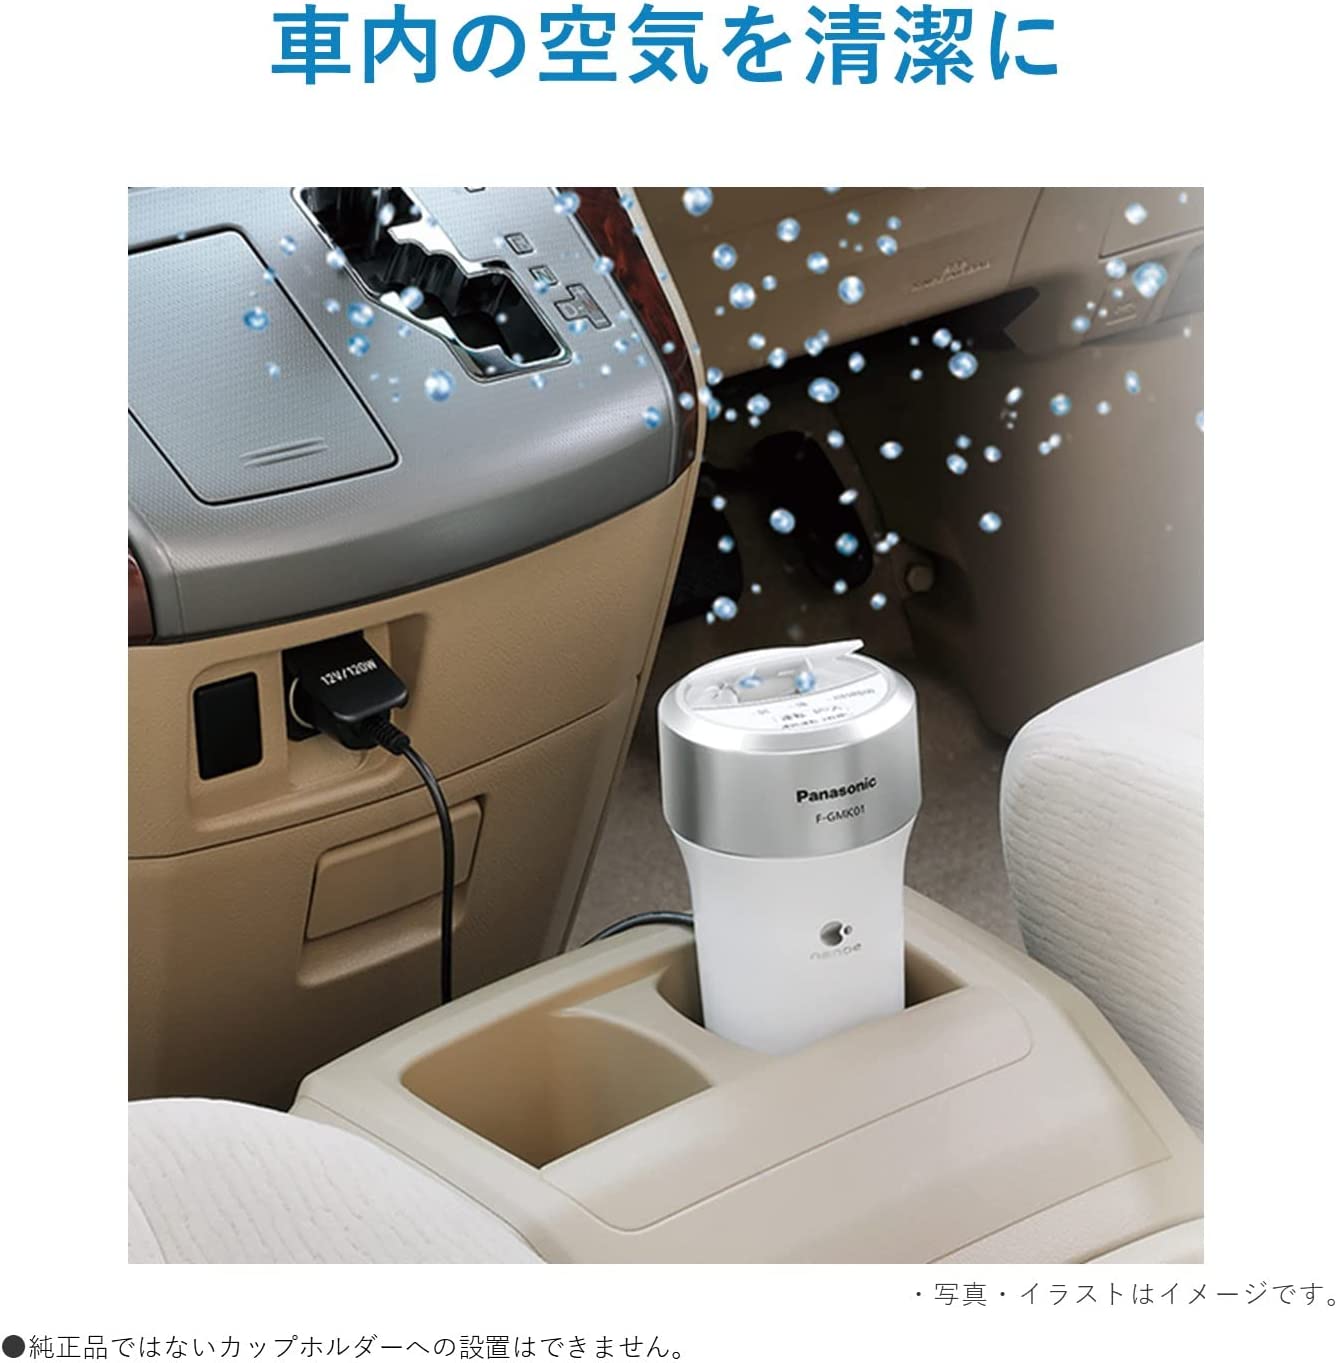 日本車用空氣清淨機Panasonic 國際牌F-GMK01 車用空清奈米水離子除臭除菌| Metis直營店| 樂天市場Rakuten